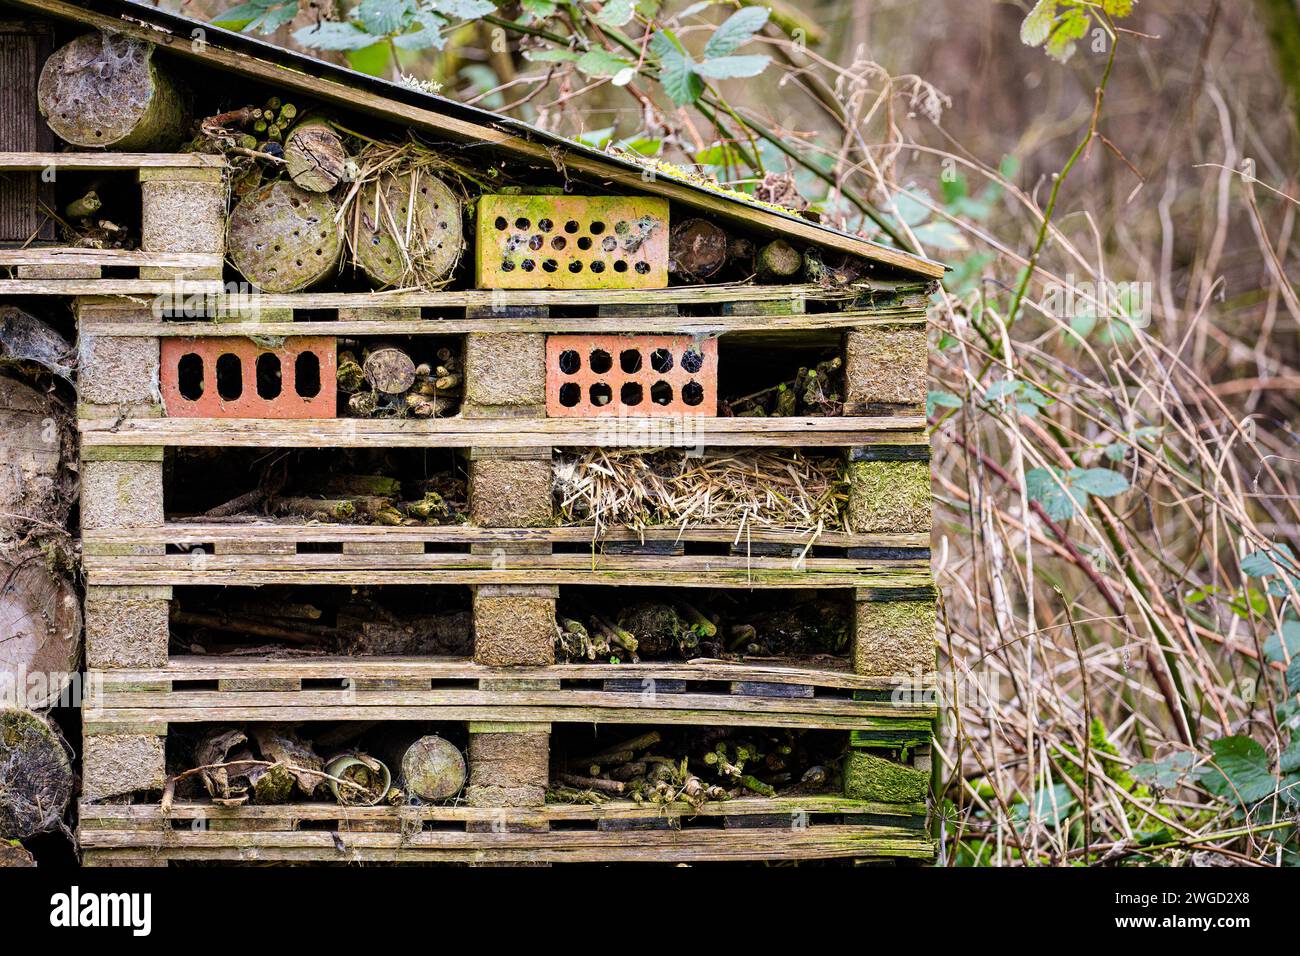 Giant Bug Hotel, abri pour insectes en bois recyclé Banque D'Images